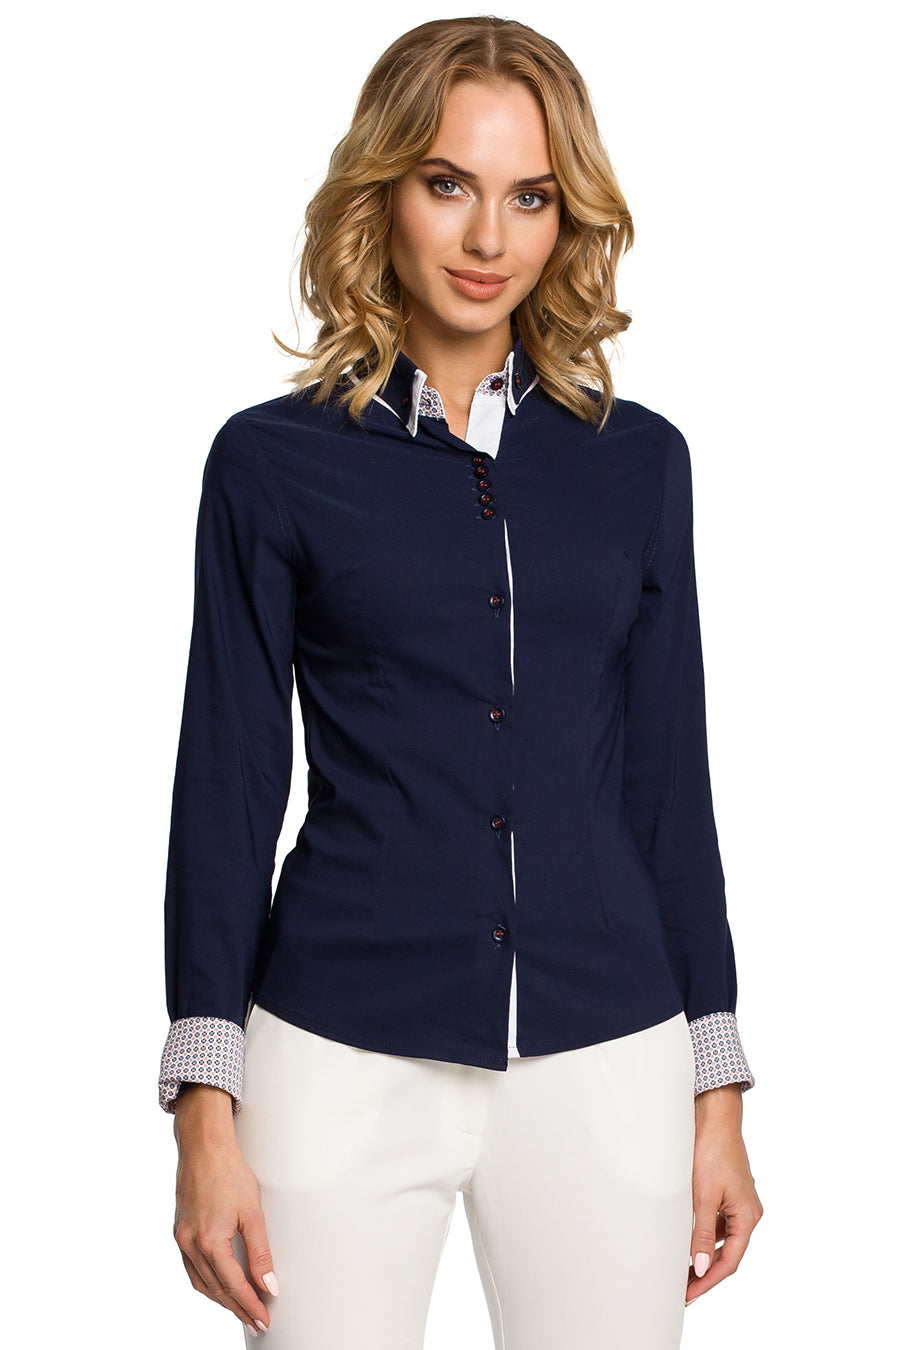 Γυναικείο πουκάμισο Tanvi, Ναυτικό μπλε 3